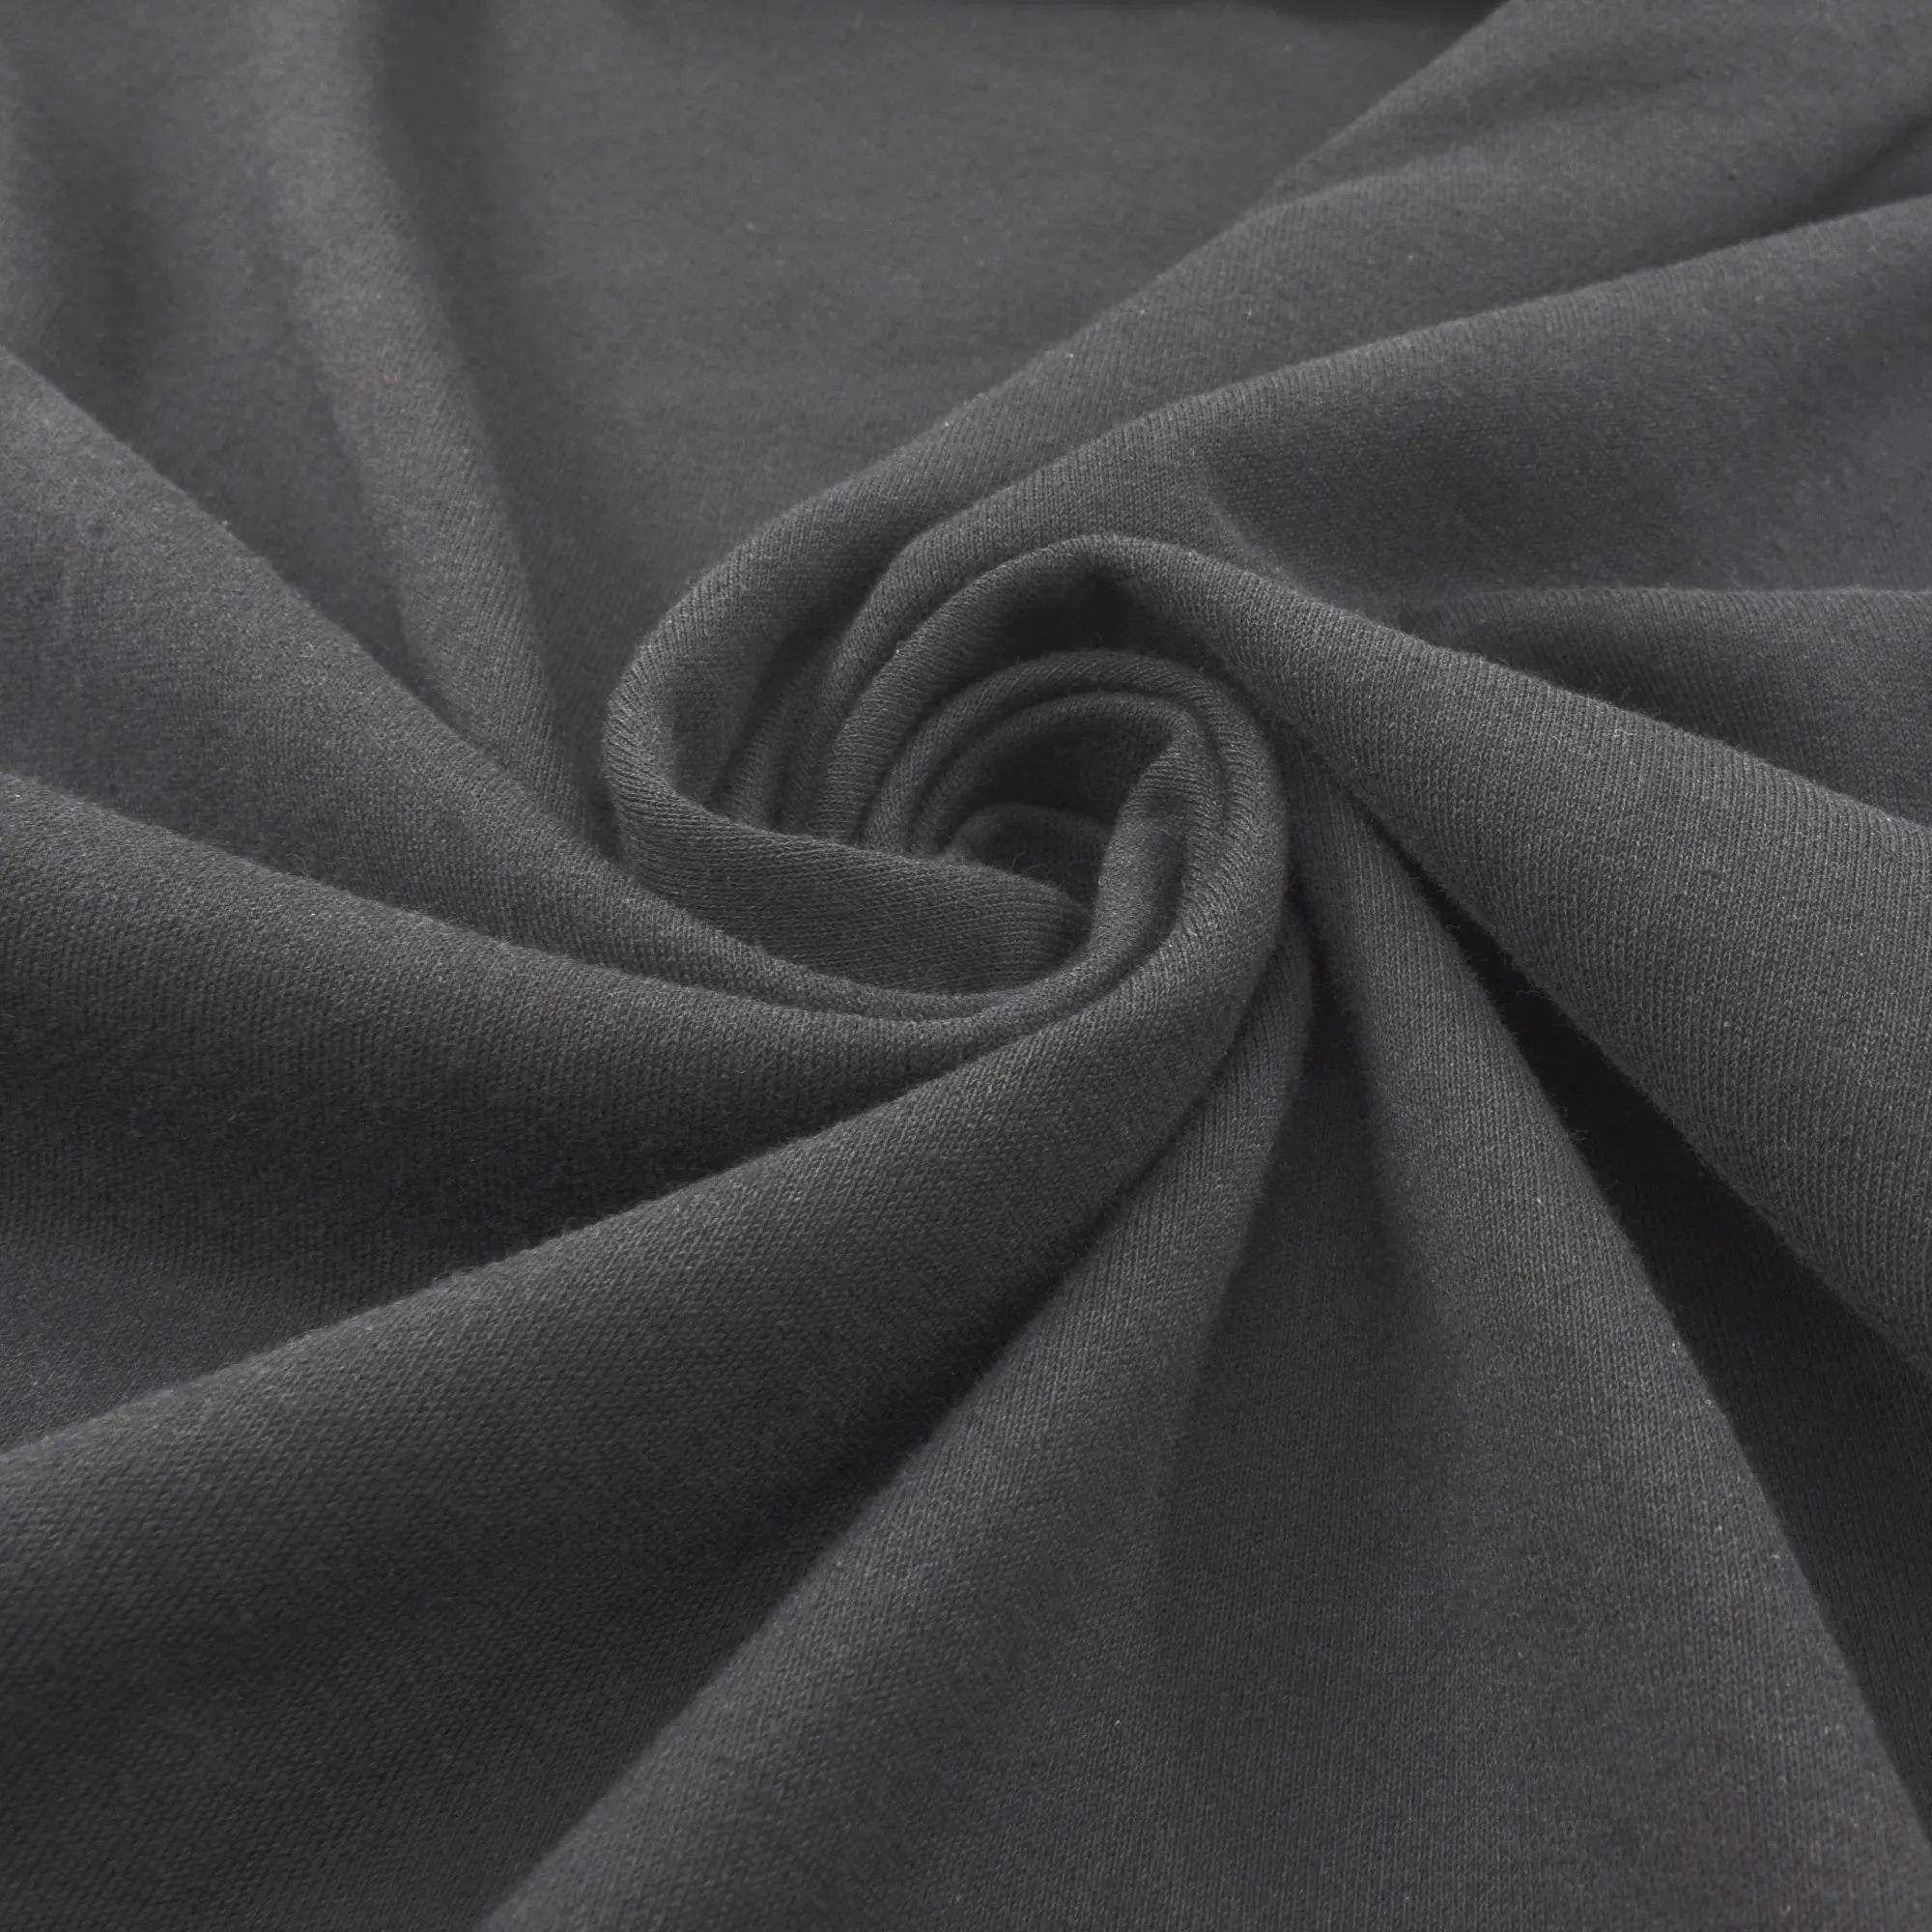 Großhandels preis Günstige Stretch Schwarz Farbe 65% Baumwolle 35% Polyester 260GSM French Terry Stoff zum Nähen von Kleidung nach Kilogramm